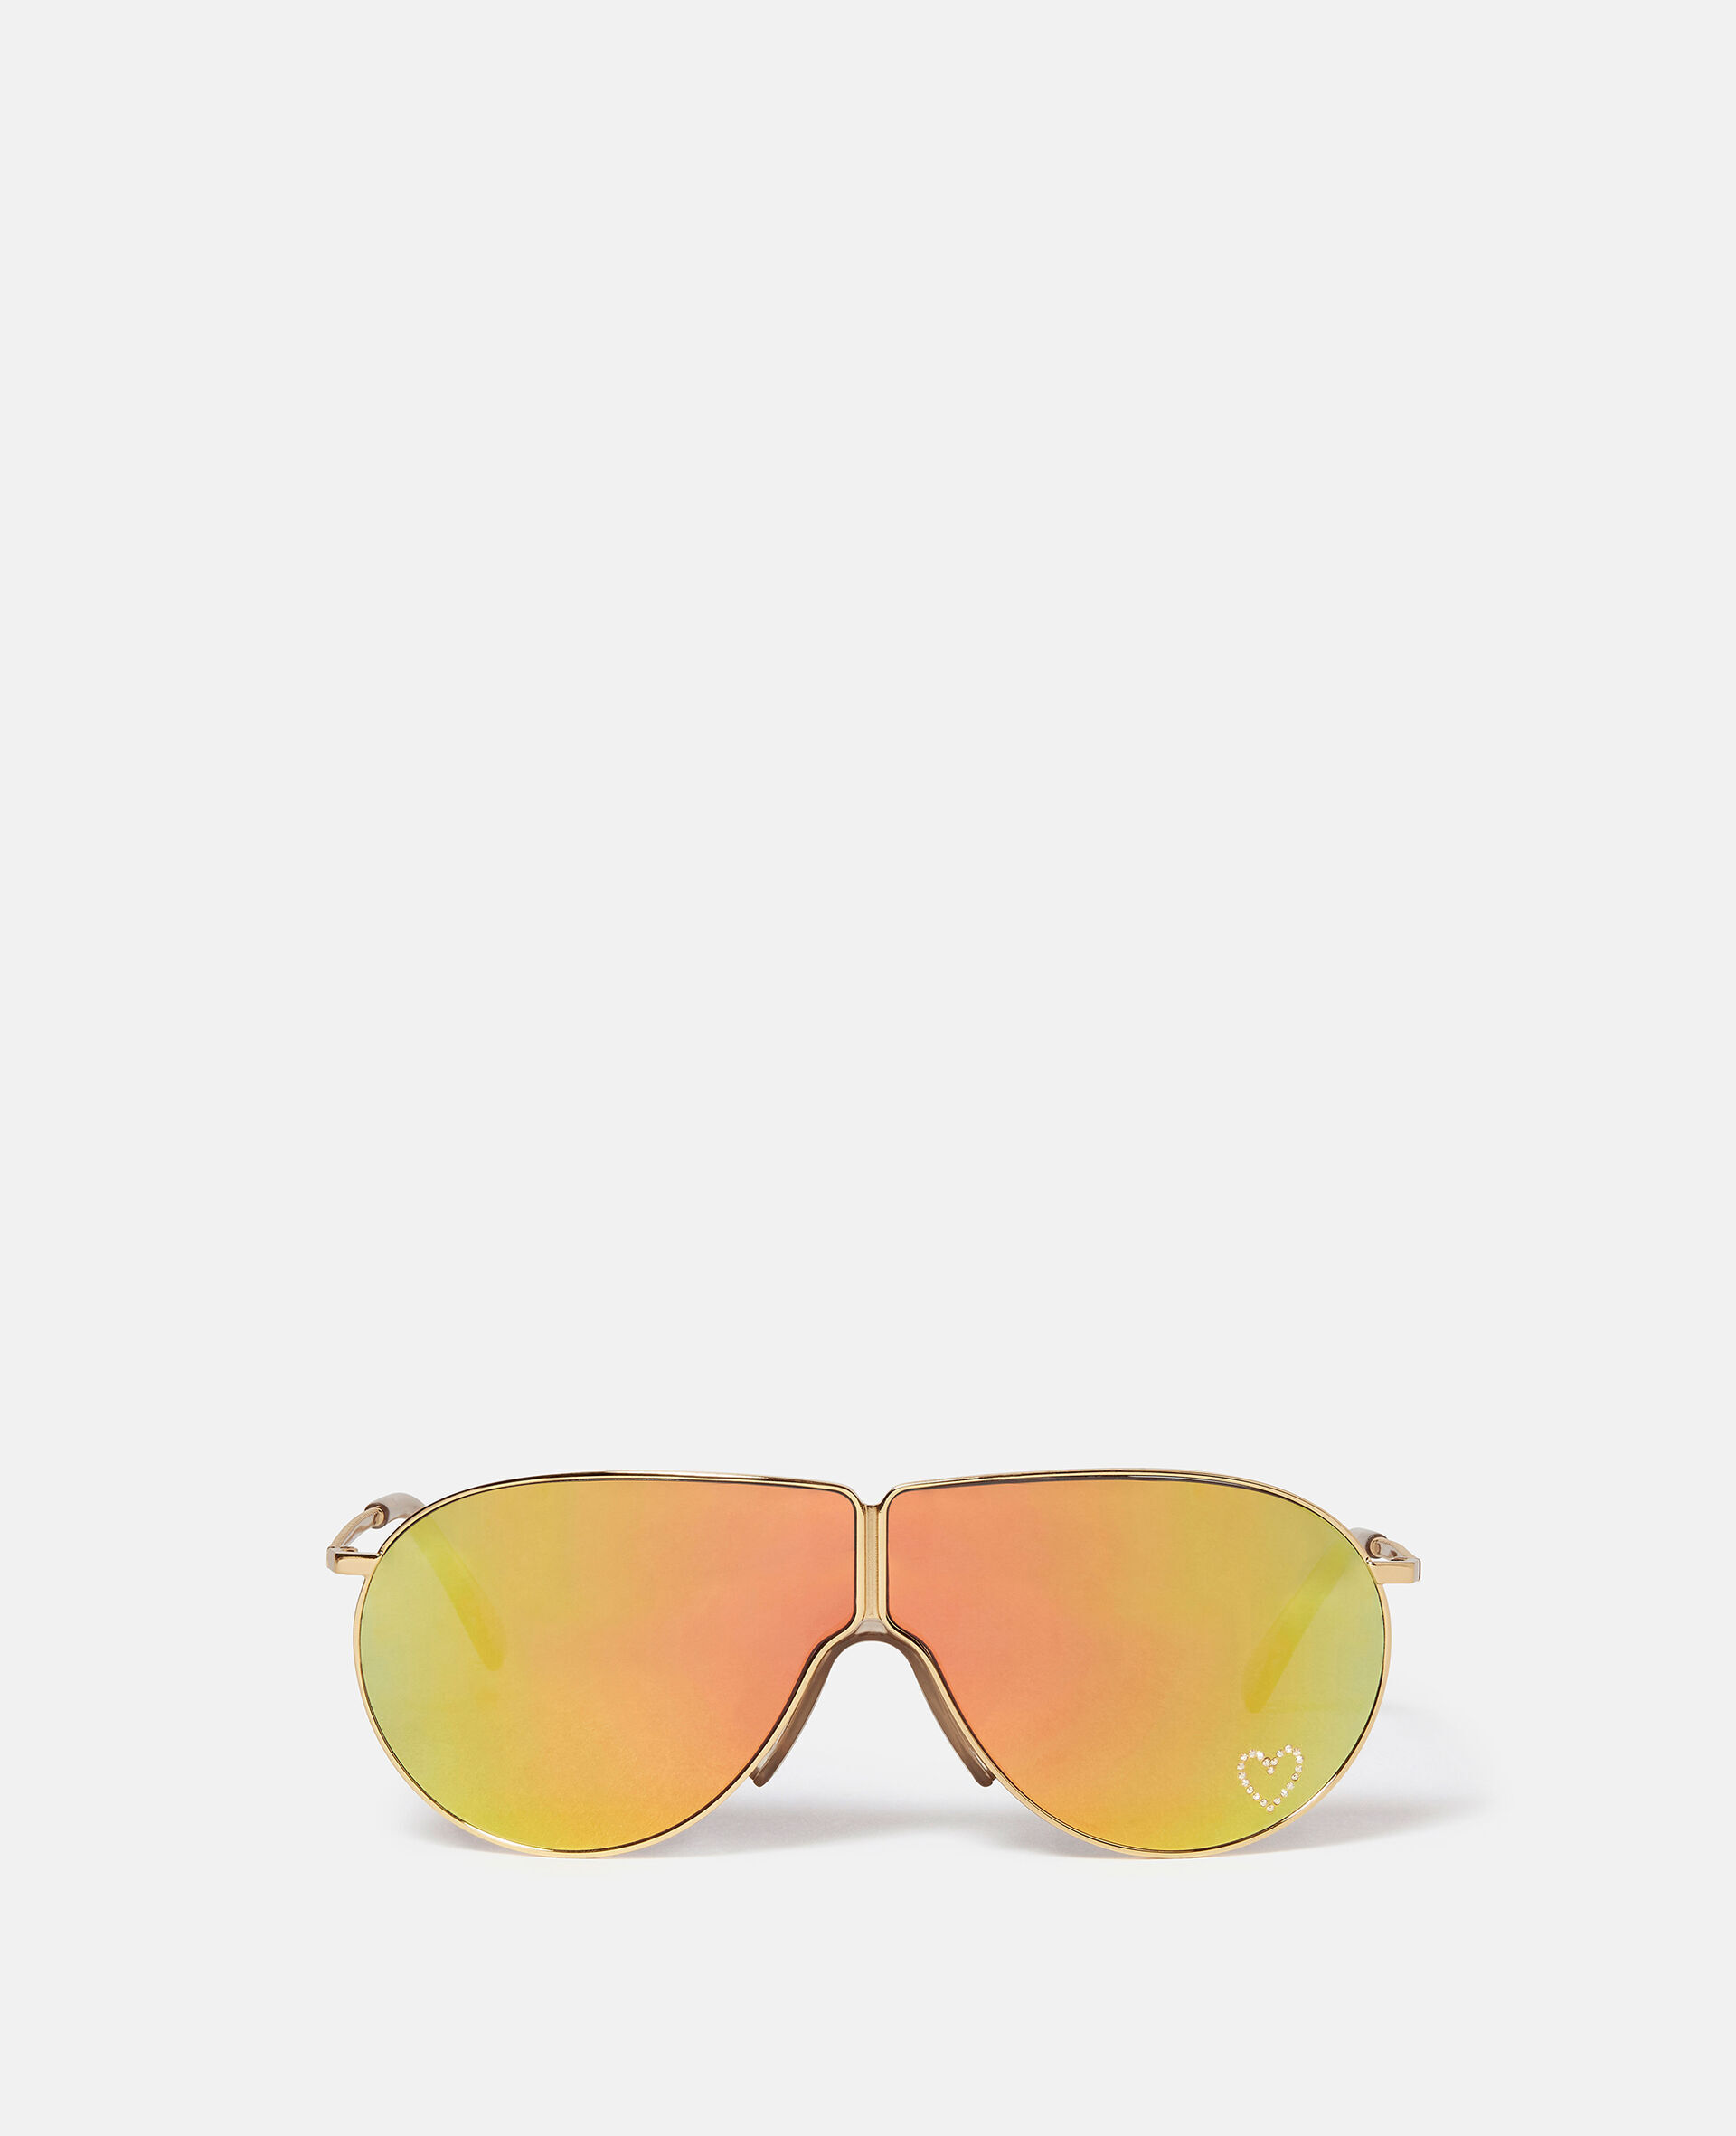 Loveheart Metal Aviator Sunglasses-Multicoloured-large image number 0